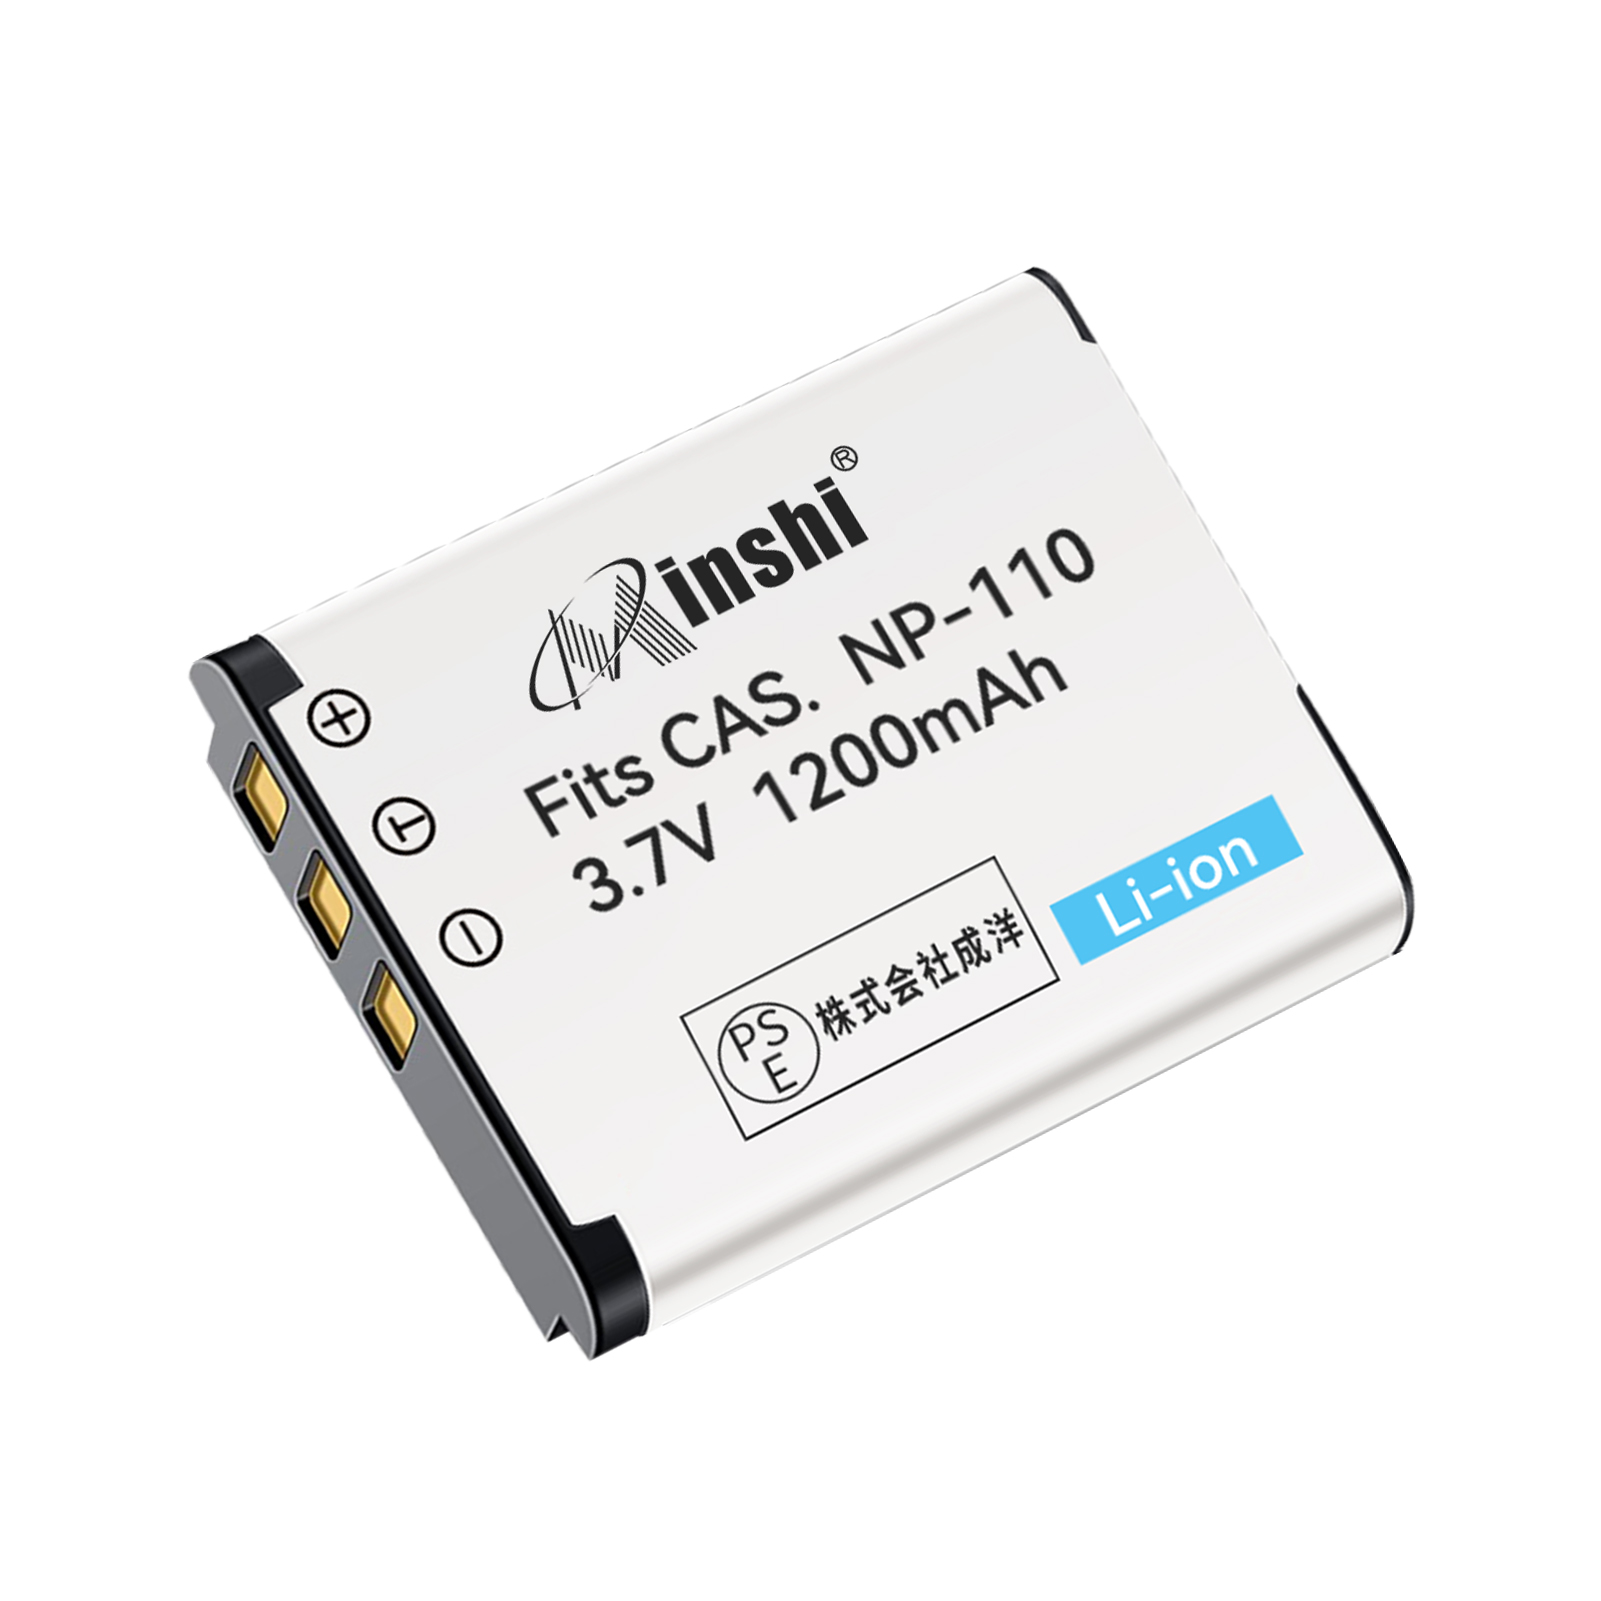 【1年保証】minshi CASIO BN-VG212 NP-160 【1200mAh 3.7V】PSE認定済 高品質BN-VG212U NP-160交換用バッテリー